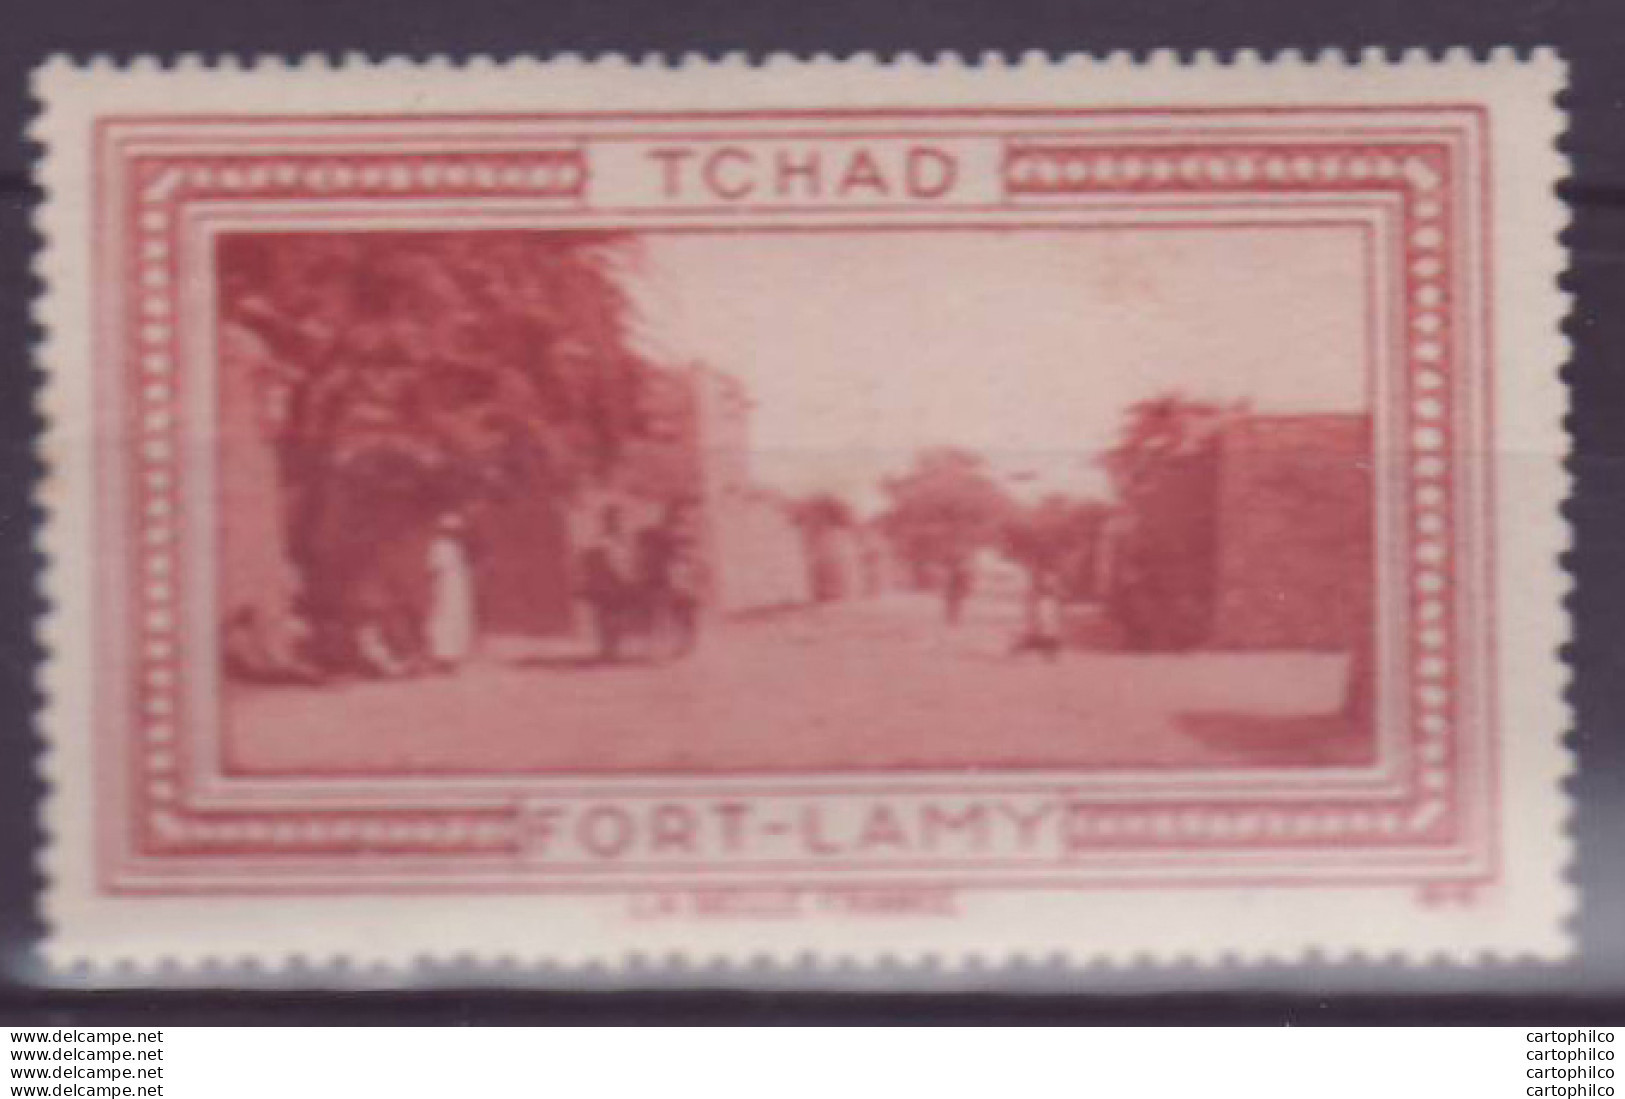 Vignette ** Tchad Fort Lamy - Unused Stamps